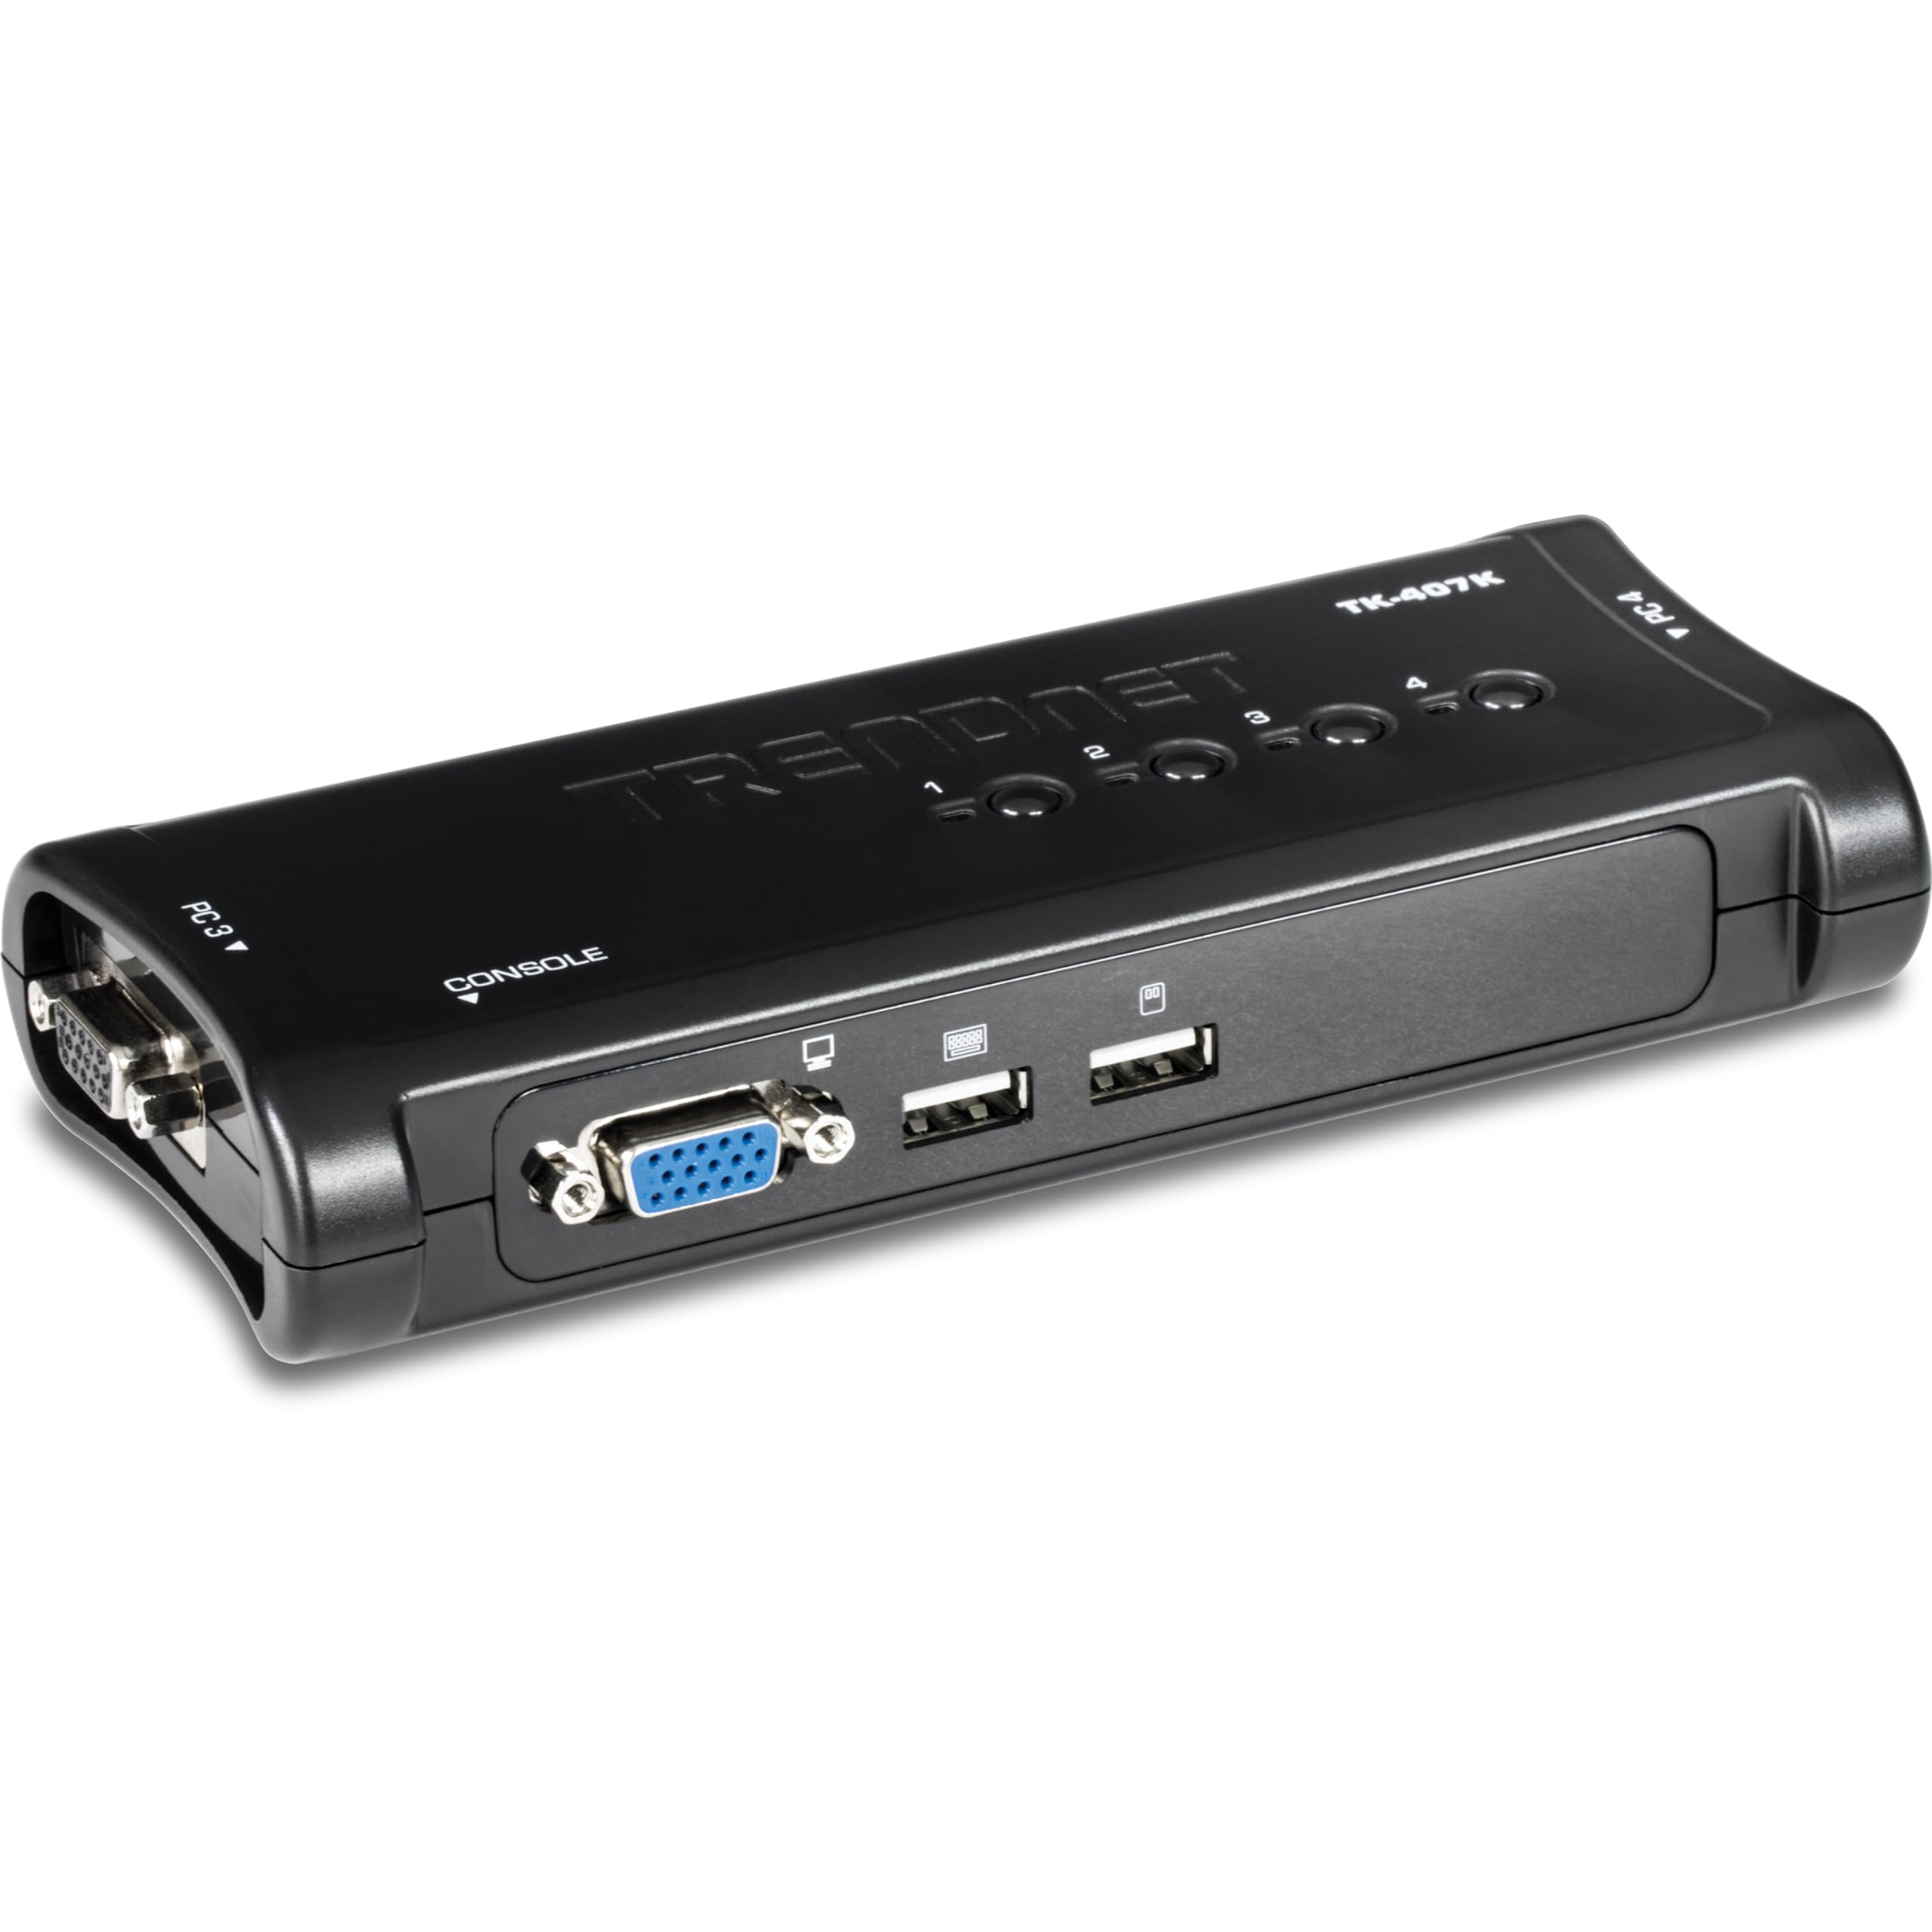 TRENDnet TK-407K 4-Port USB KVM Switch Kit, VGA & USB Anschlüsse, 2048 x 1536 Auflösung, Kabel enthalten, Kontrolle von bis zu 4 Computern